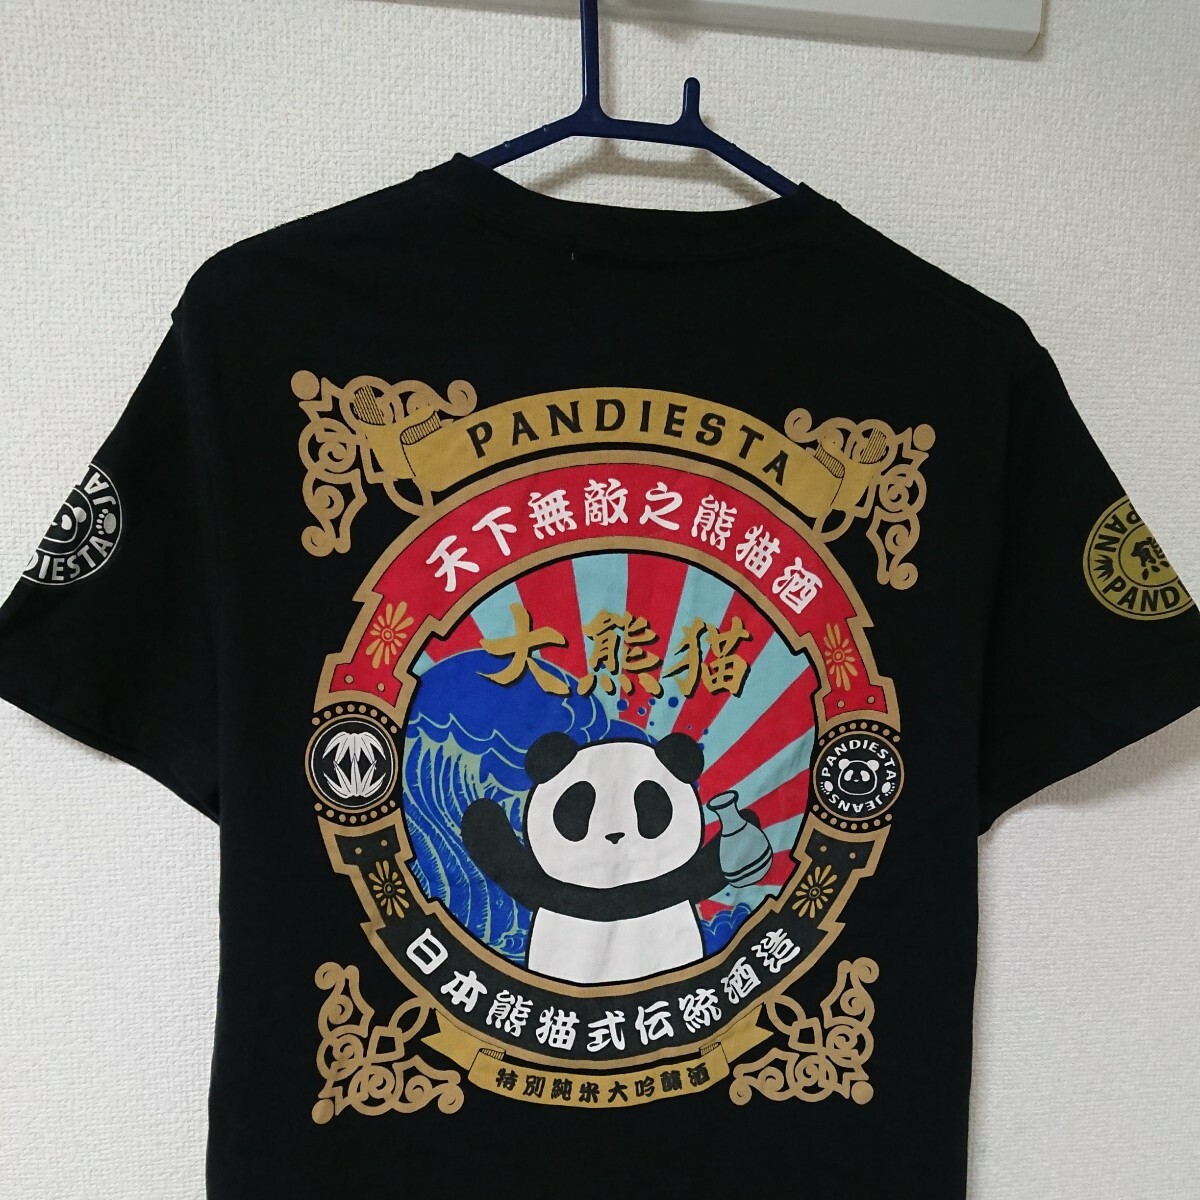 PANDIESTA JAPAN パンディエスタ ジャパン トップス シャツ 半袖 Tシャツ 黒 ブラック 赤 青 和柄系 パンダ 熊猫 M 人気 定番_画像3